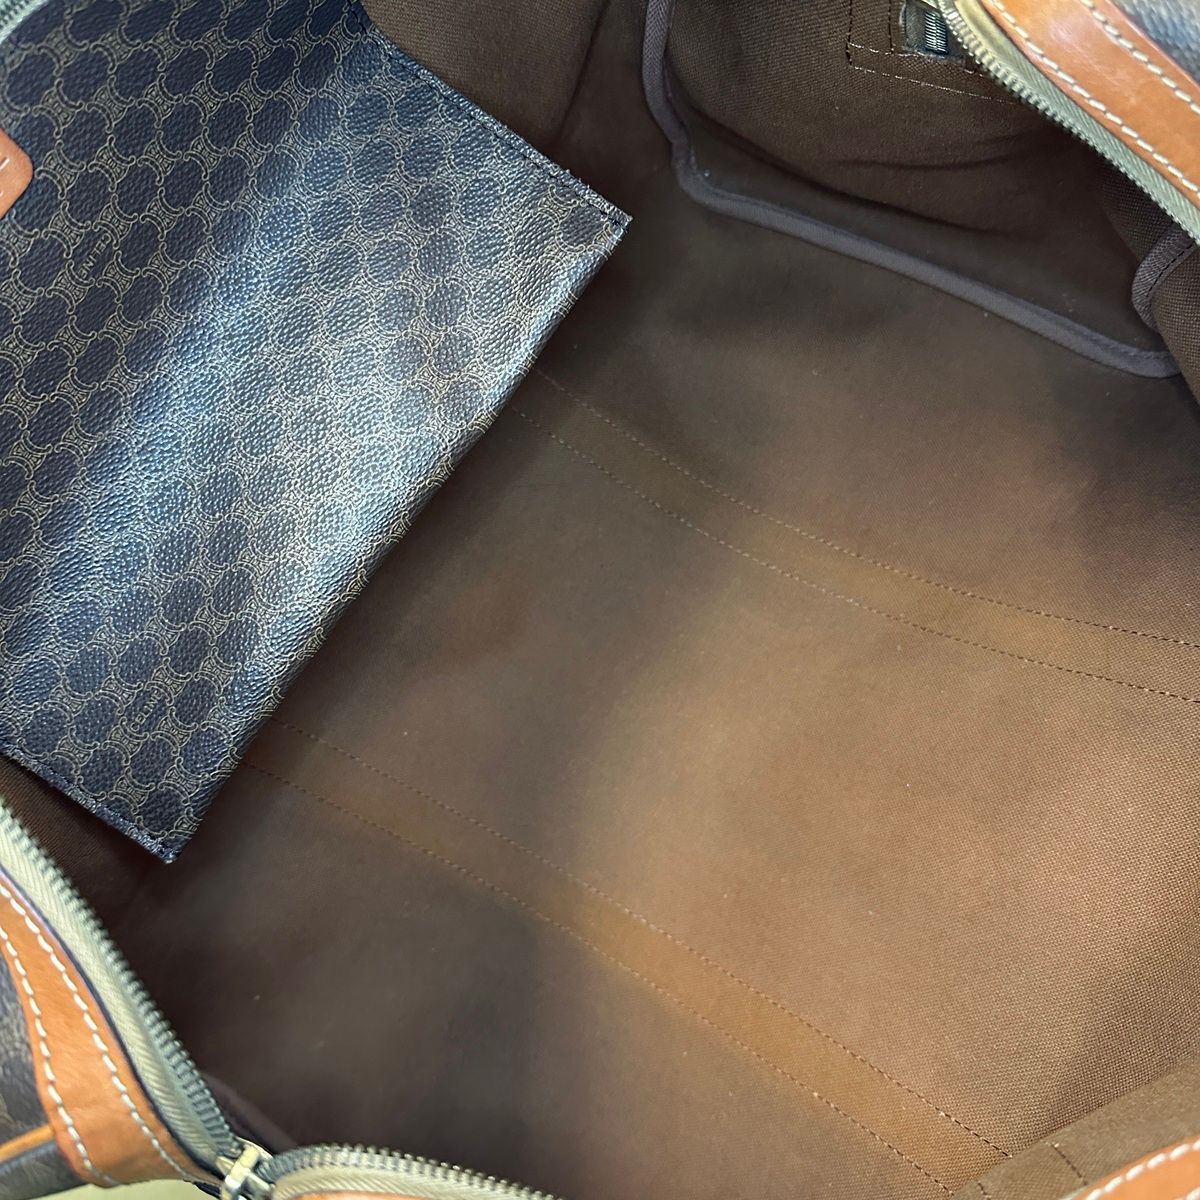 CELINE】ボストンバッグ 旅行鞄 マカダム柄 南京錠 PVC ブラウン - ファッション